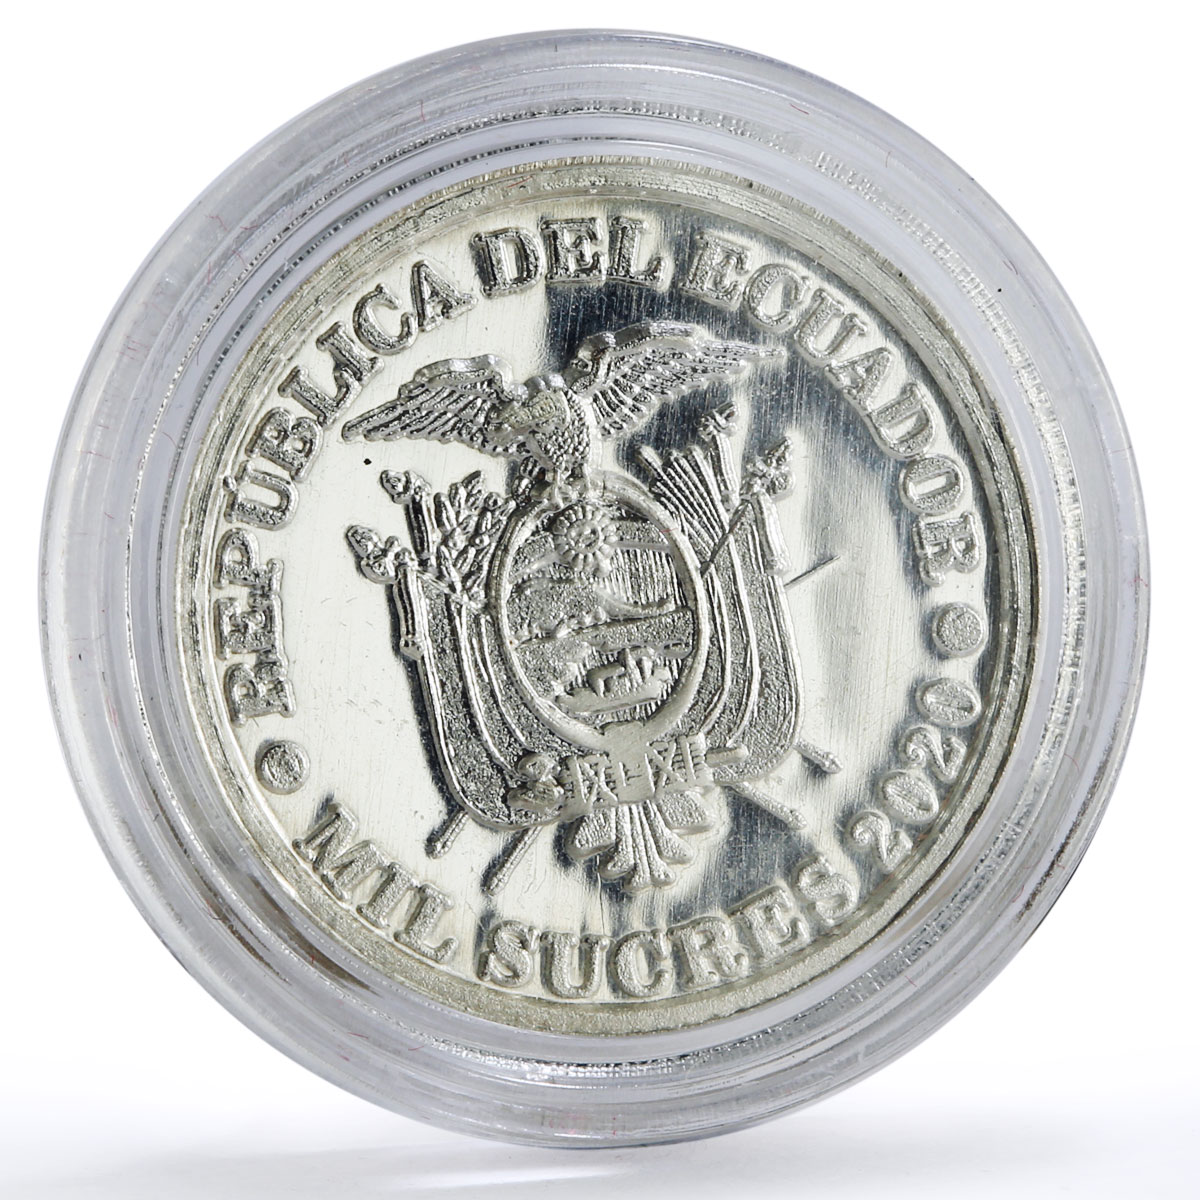 Ecuador 1000 sucres 45th President Osvaldo Hurtado Politics silver coin 2020